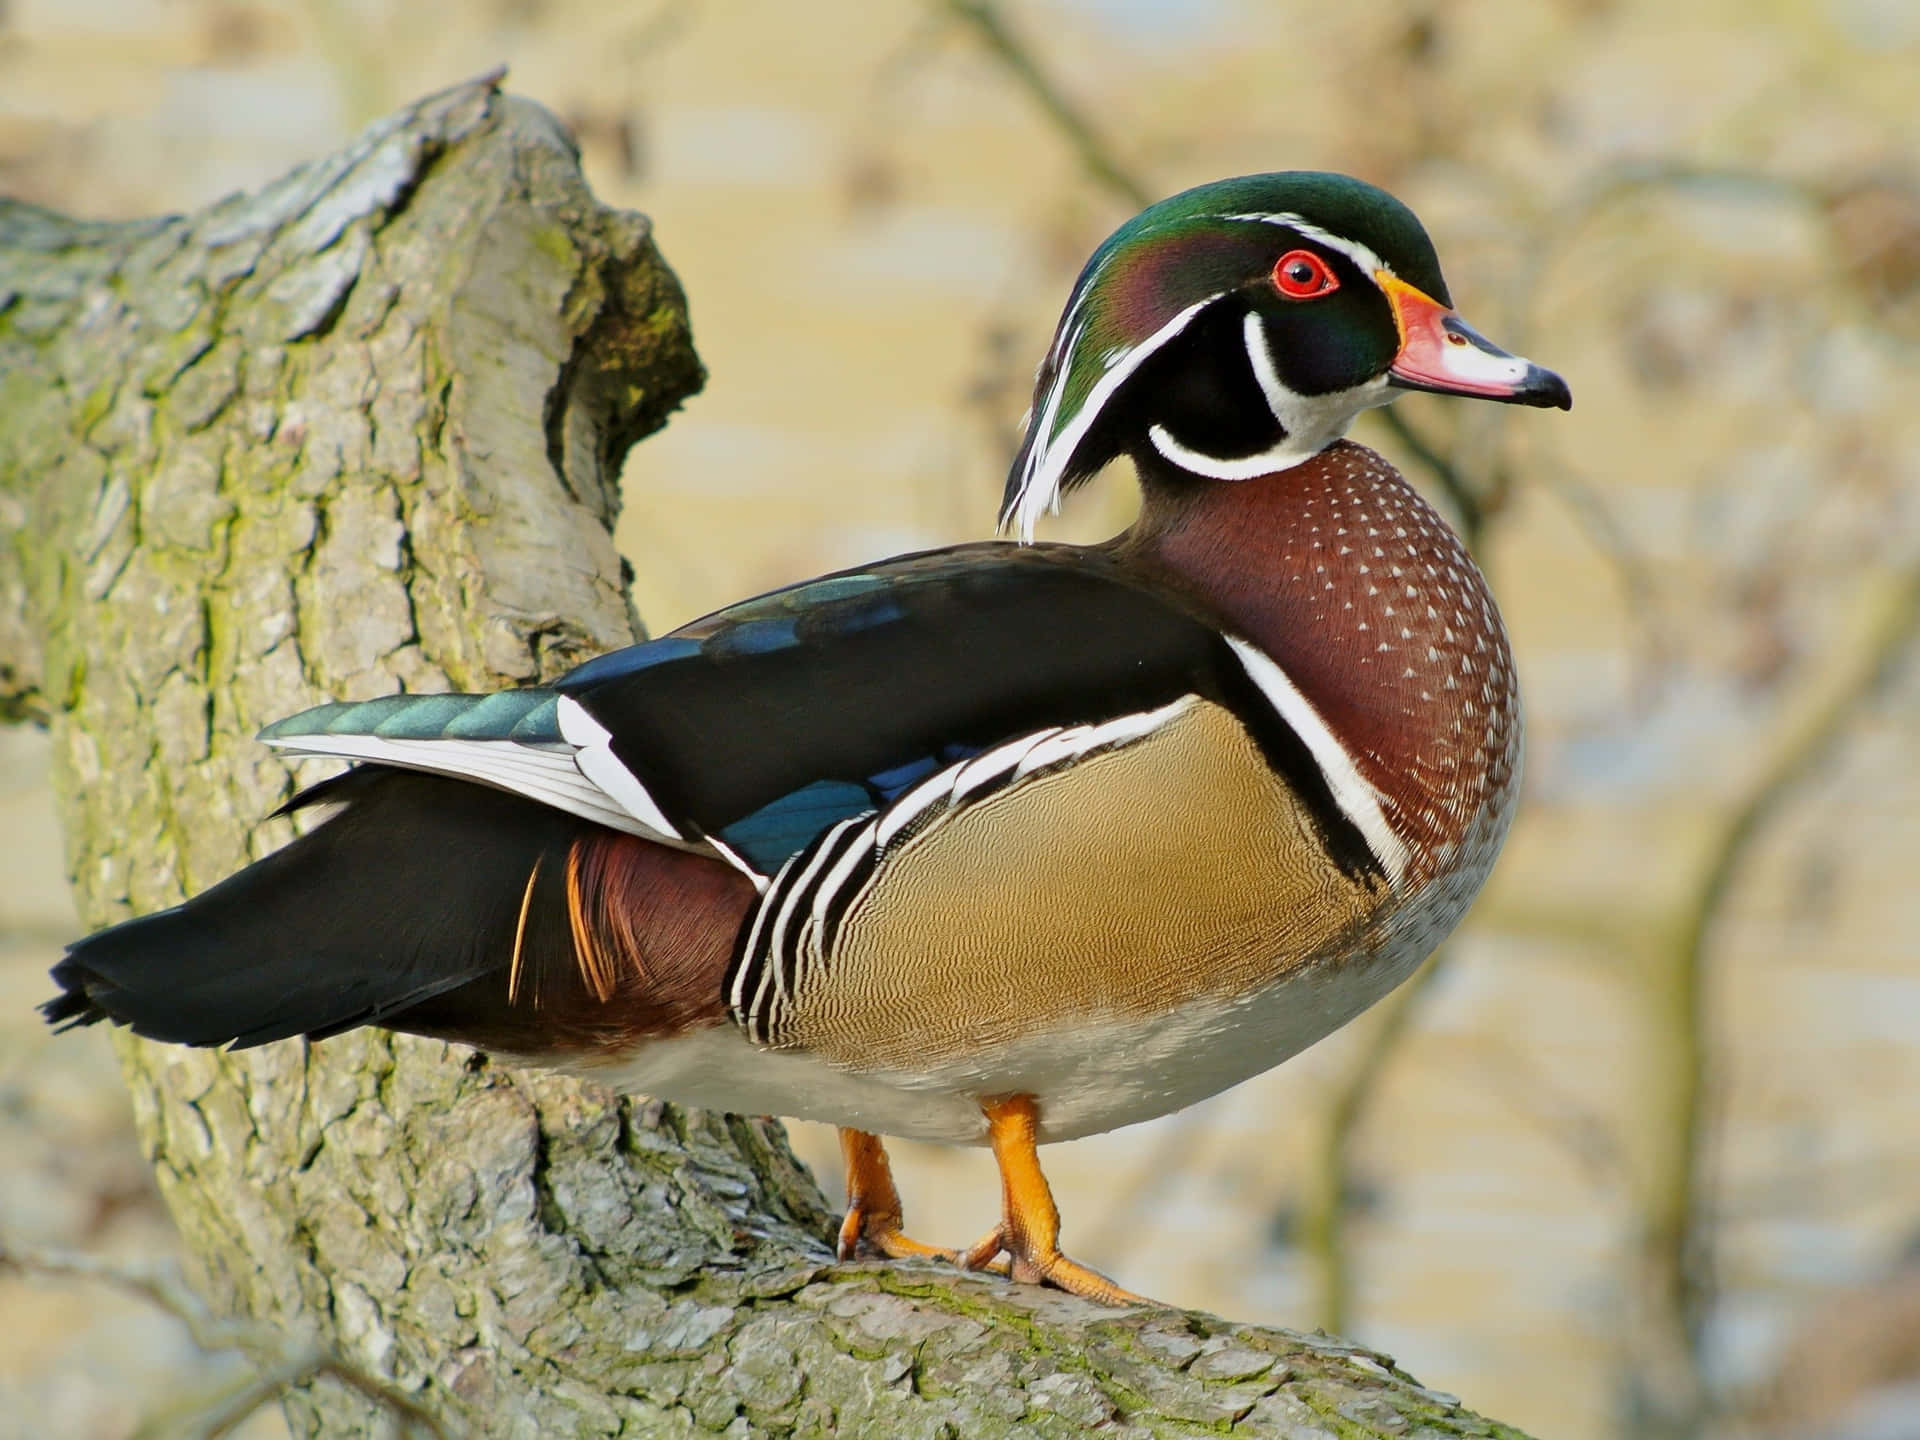 En farverig Wood Duck svømmer i sit naturlige miljø.